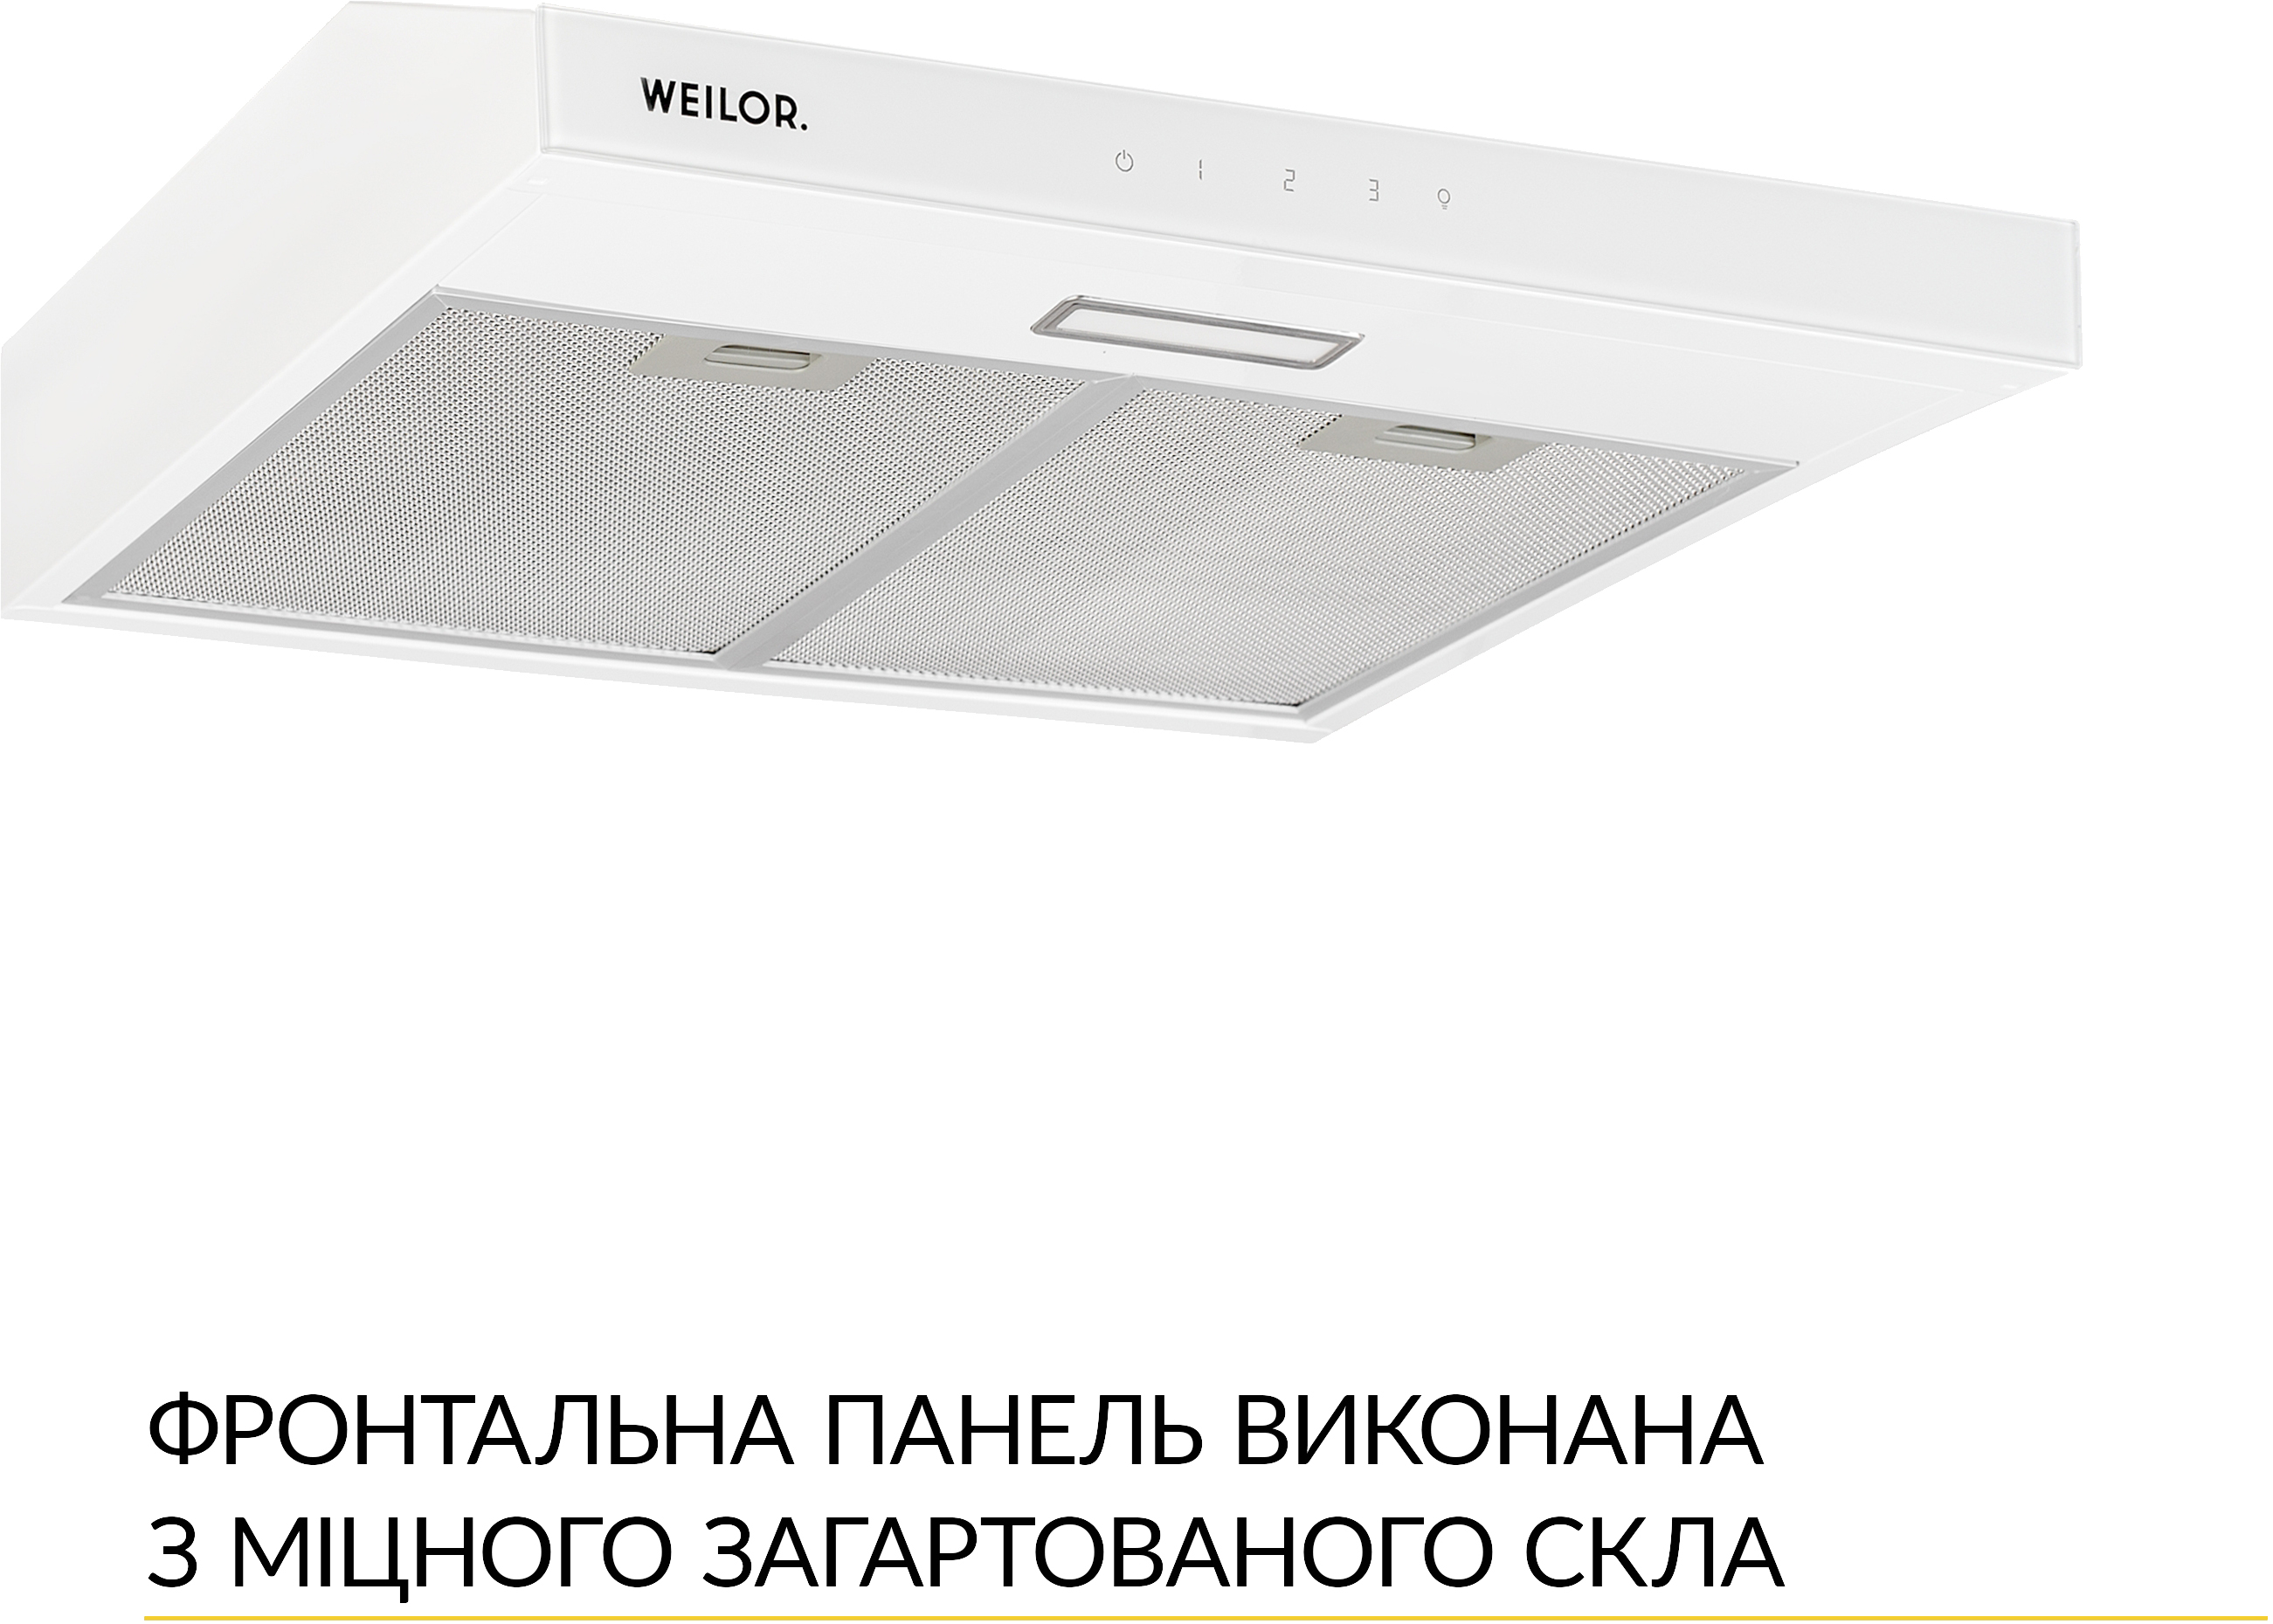 Кухонна витяжка Weilor WPL 5092 WH ціна 3499.00 грн - фотографія 2